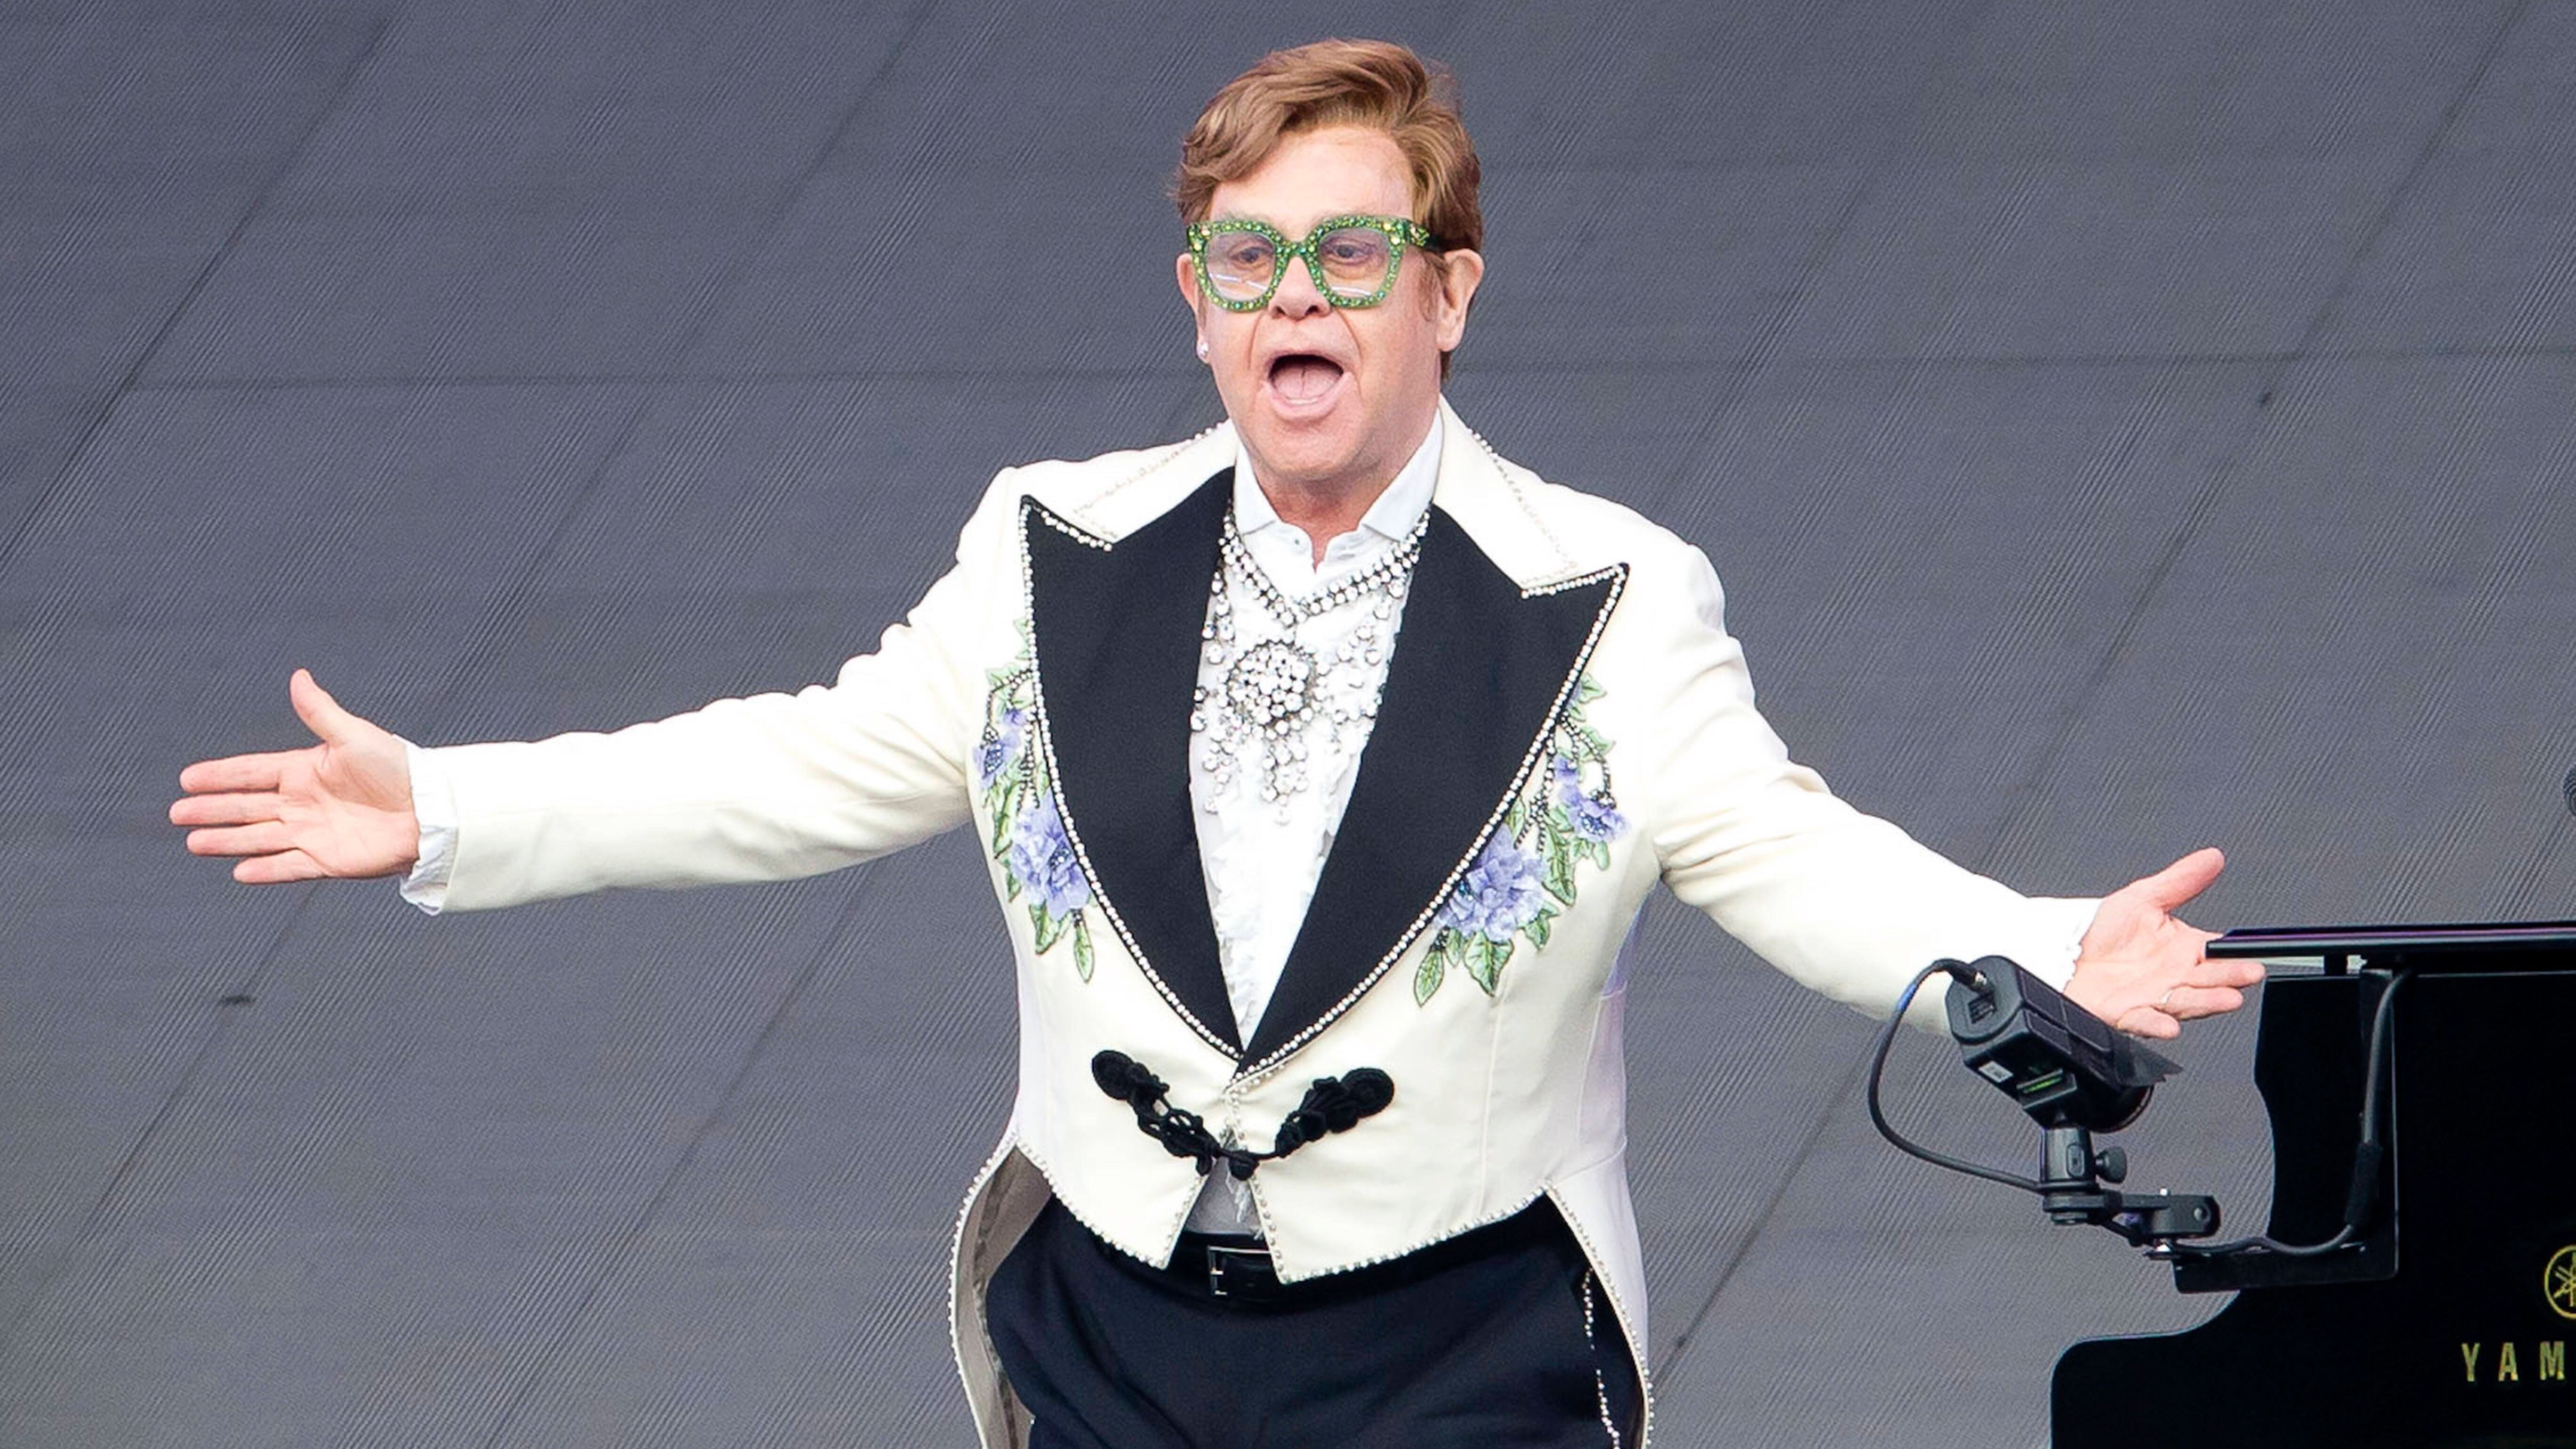 Für Sir Elton John ging's schon immer aufwärts - heute drogenfrei, geht es ihm dabei umso besser.